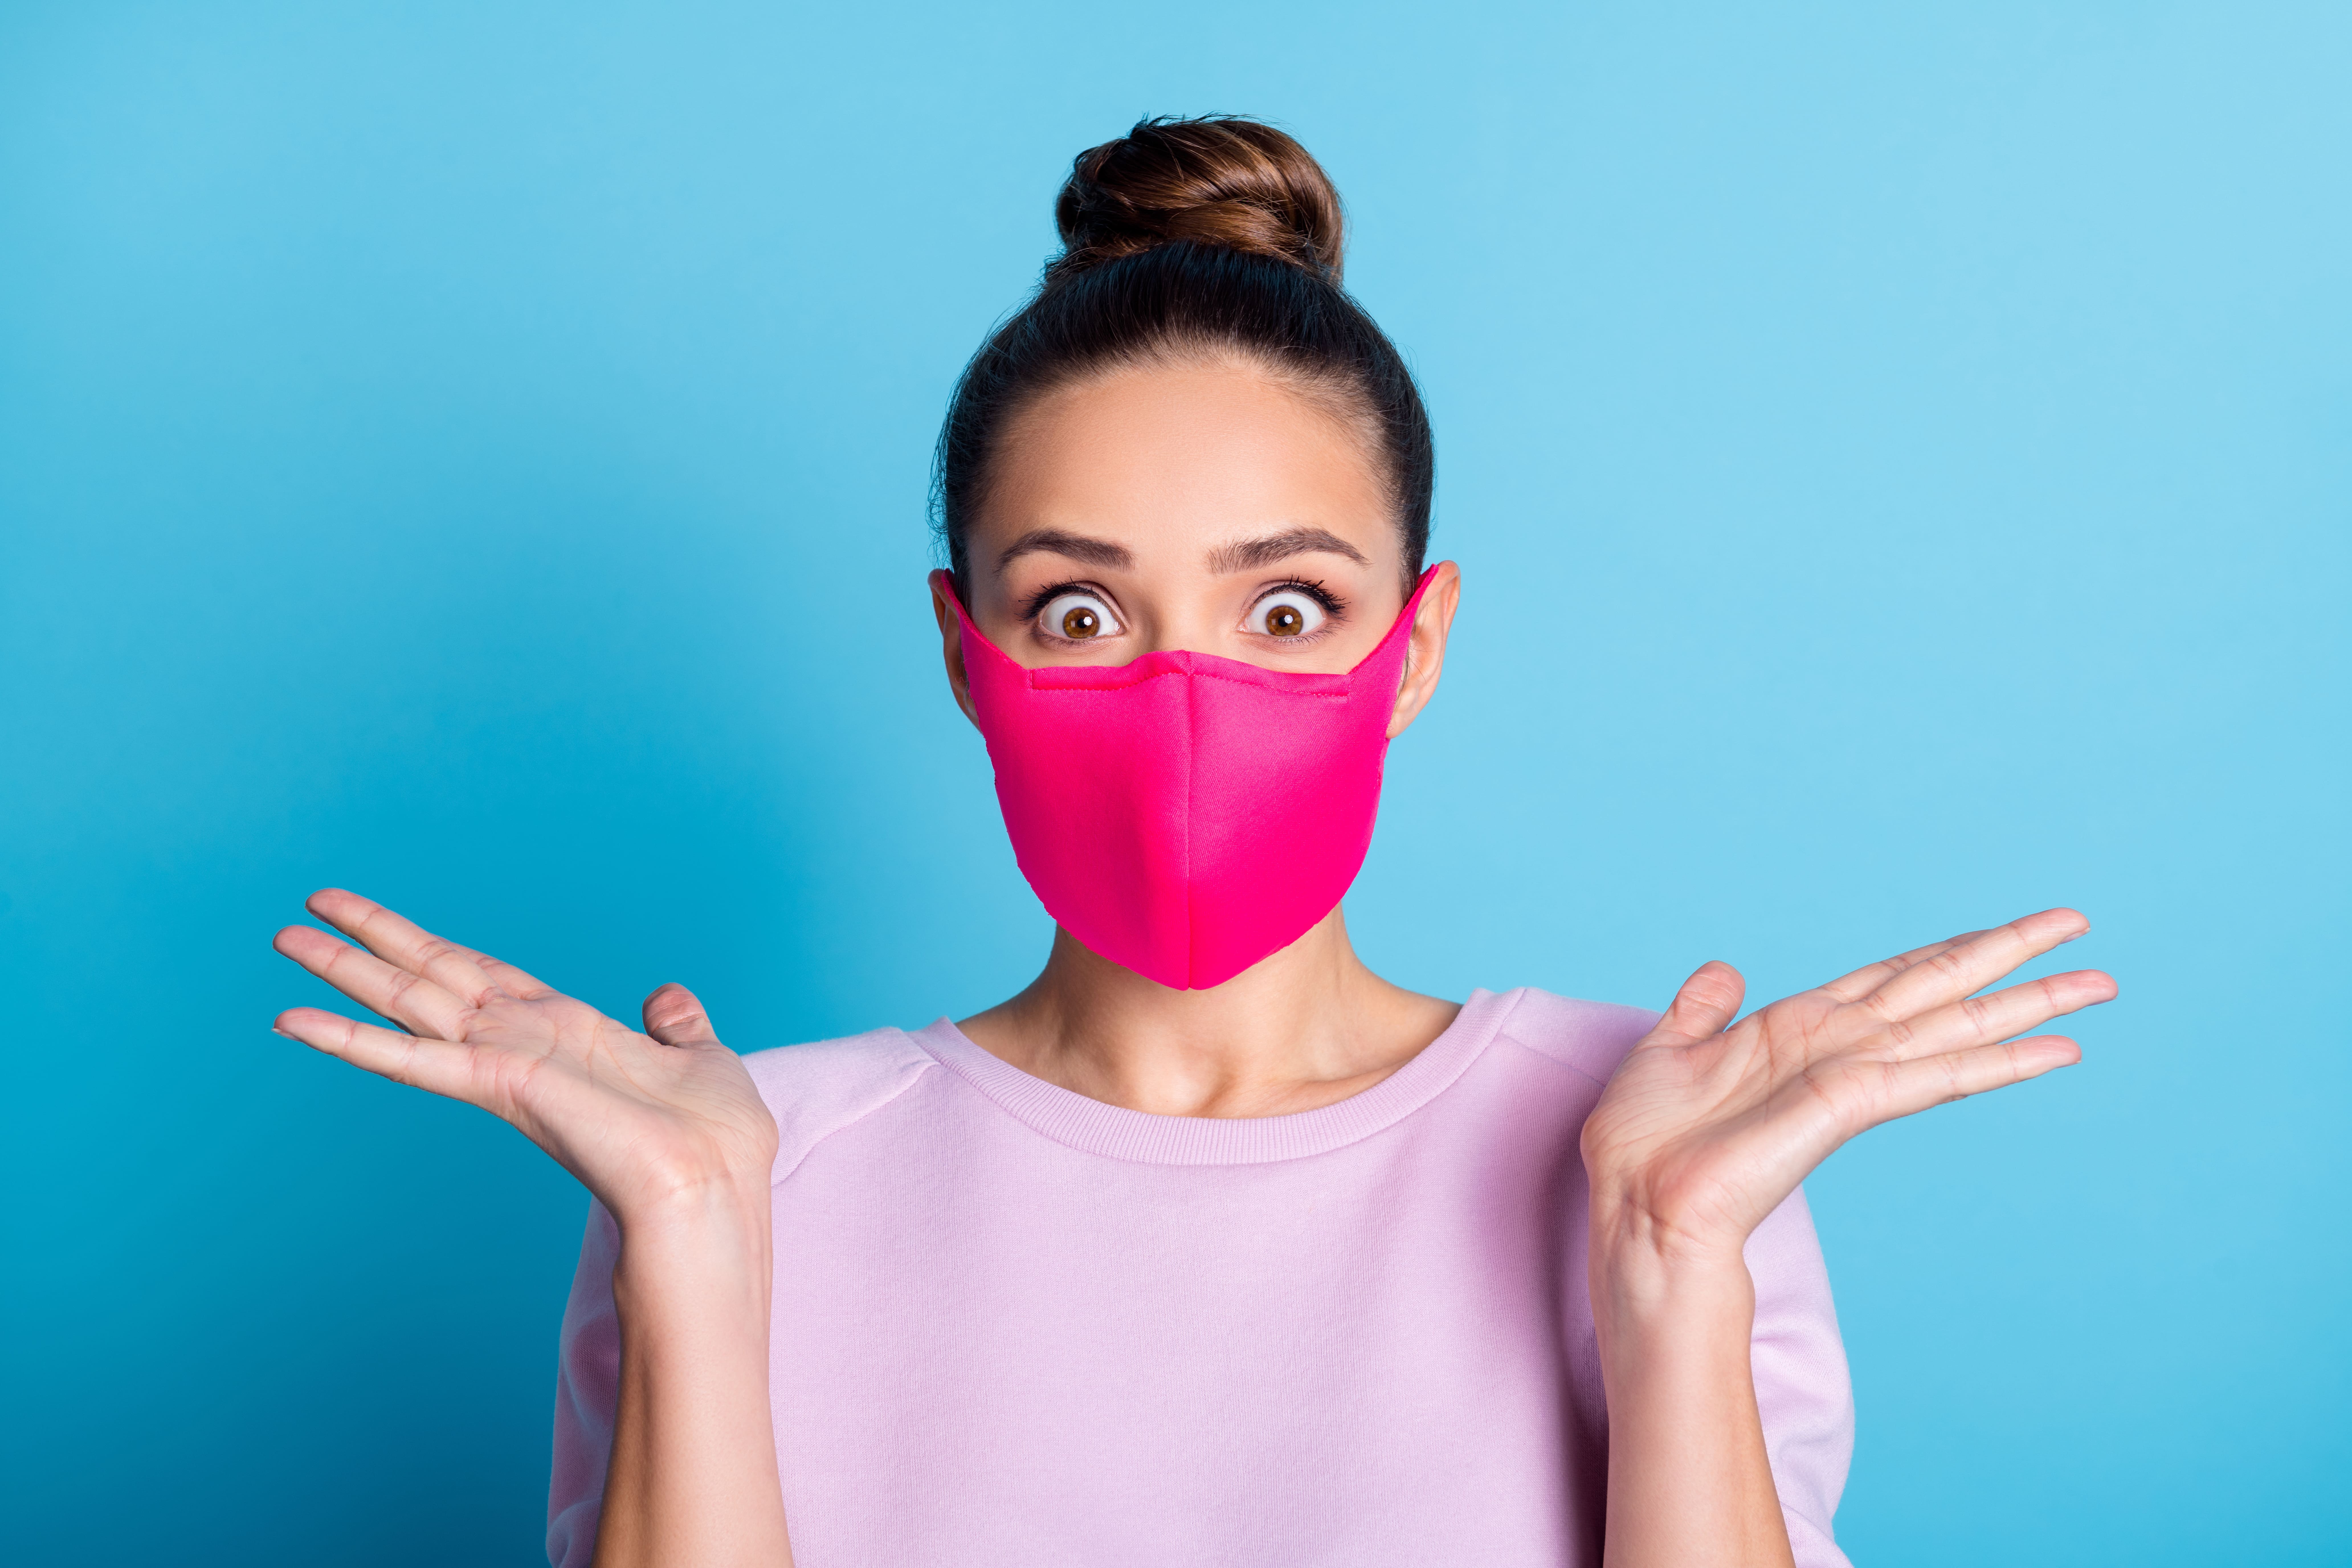 Théorie : et si les masques protégeaient aussi leurs porteurs ? © Deagreez, Adobe Stock